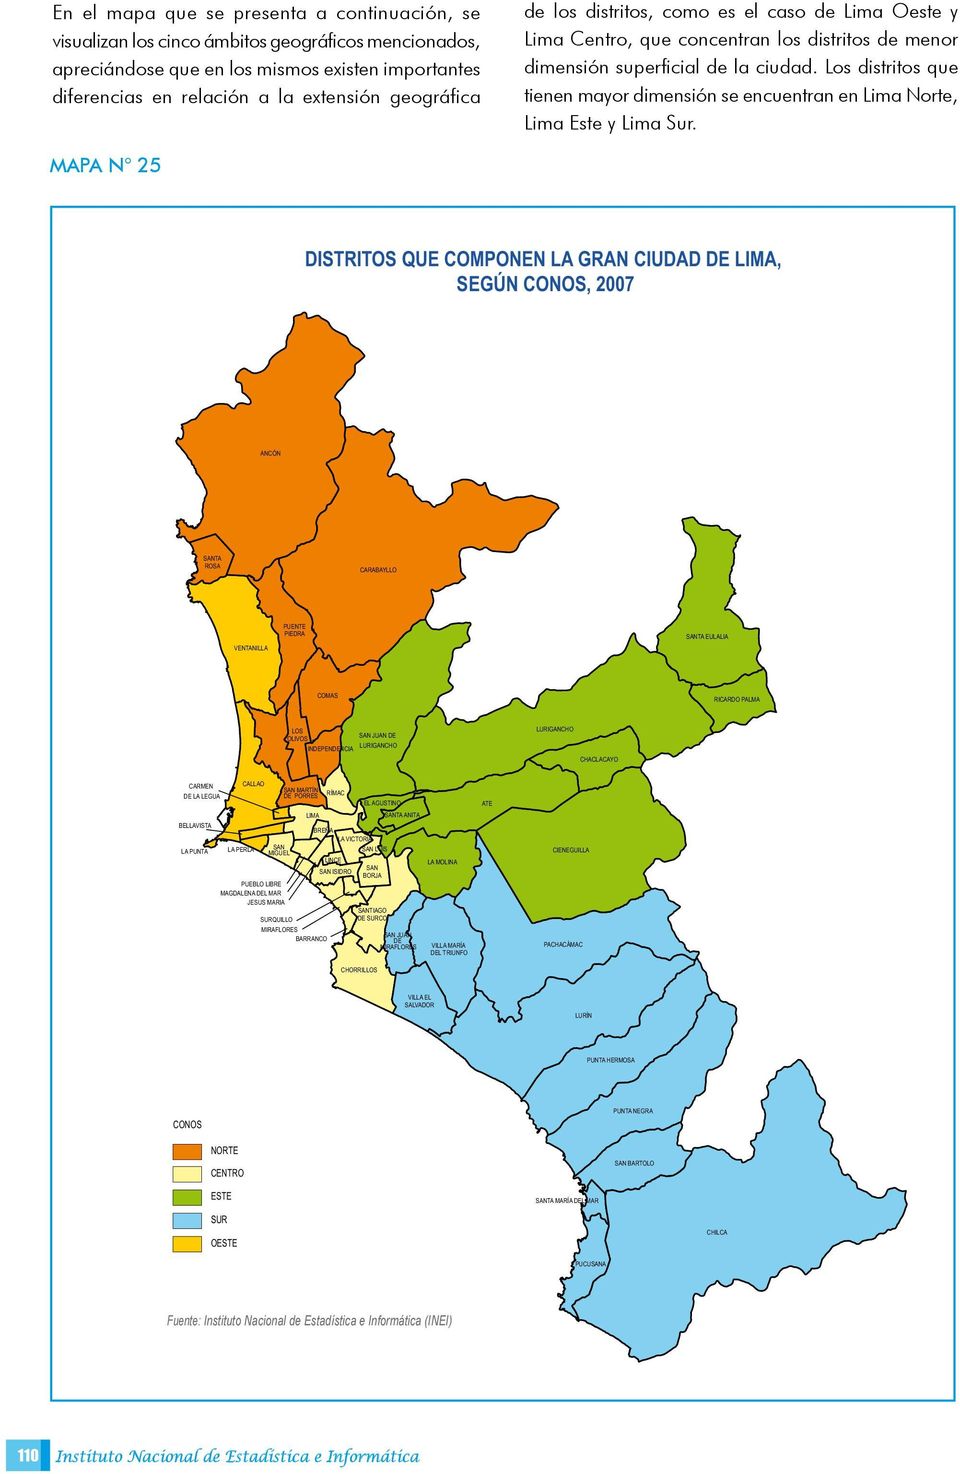 Los distritos que tienen mayor dimensión se encuentran en Lima Norte, Lima Este y Lima Sur.